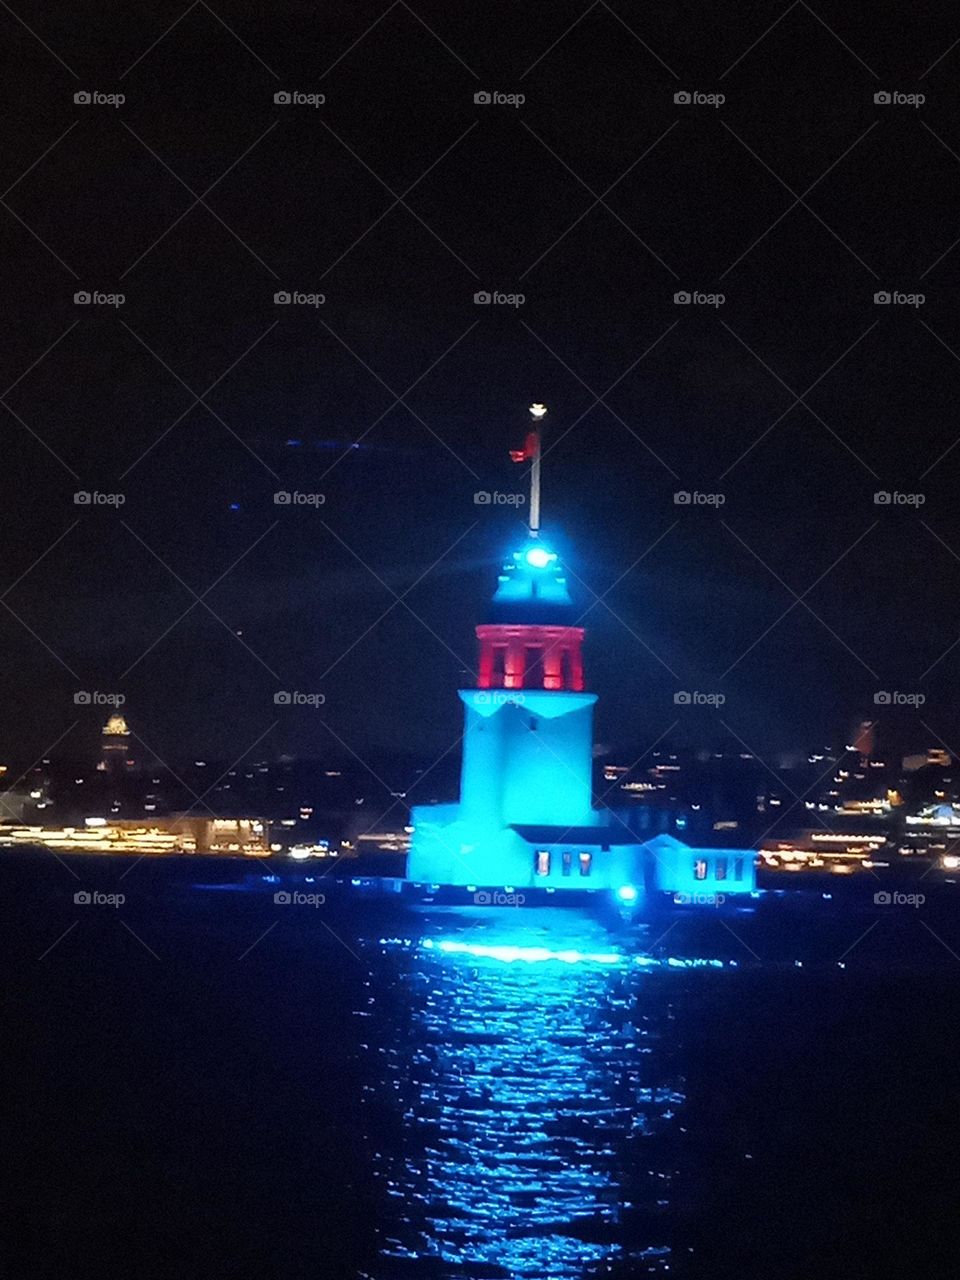 Kız Kulesi İstanbul